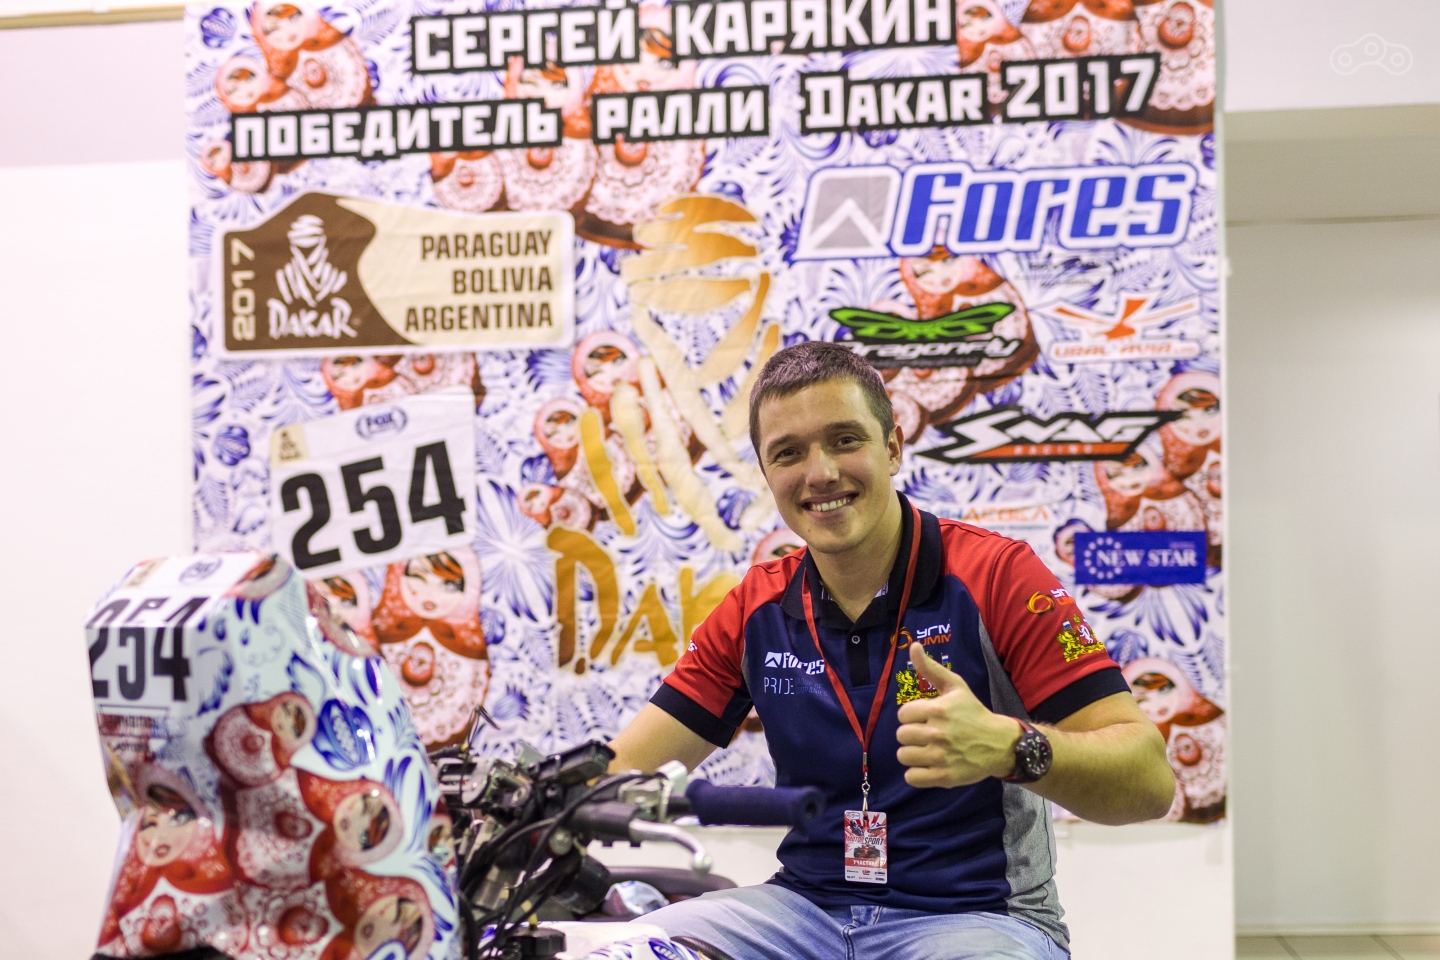 Сергей Карякин, победитель ралли Дакар 2018 на выставке Motorsport Expo Next 2017